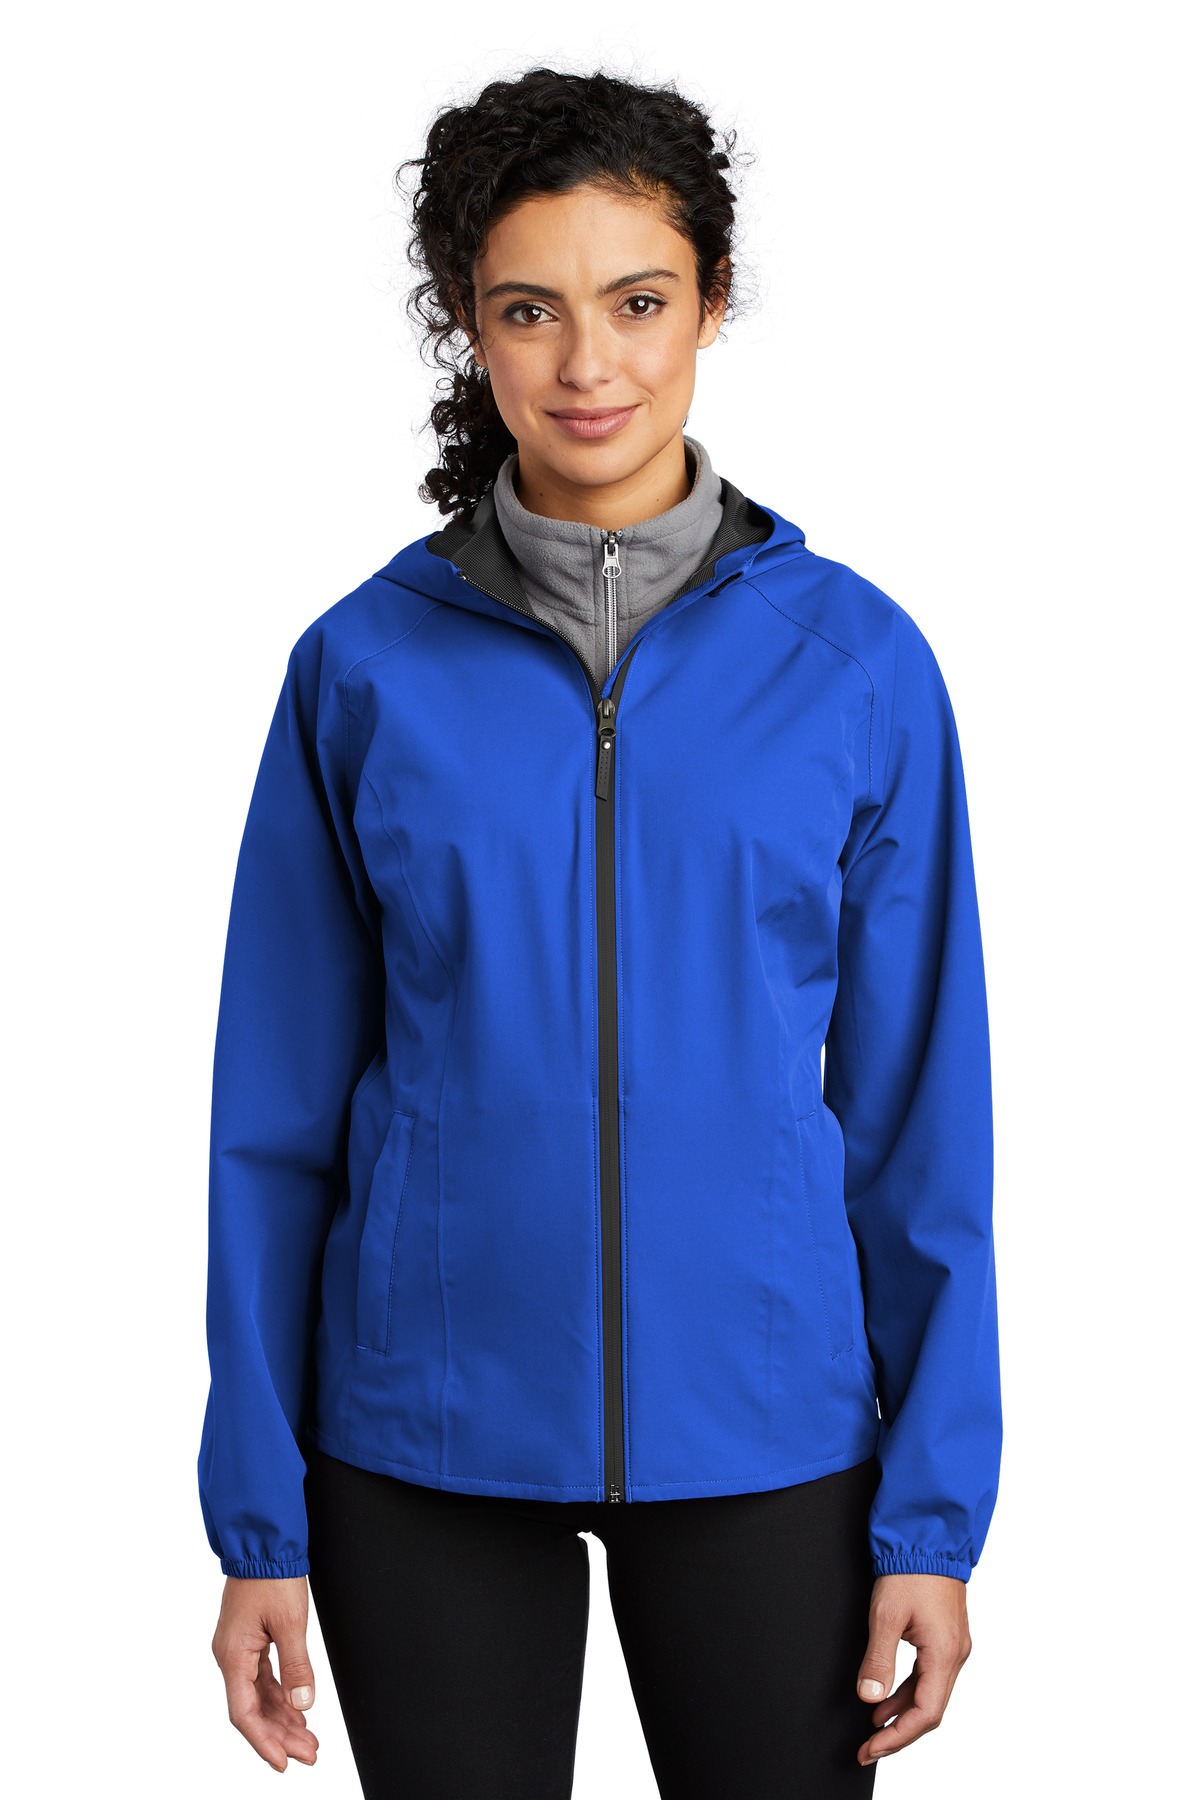 ApparelBus - Port Authority L407 Ladies Essential Rain Jacket